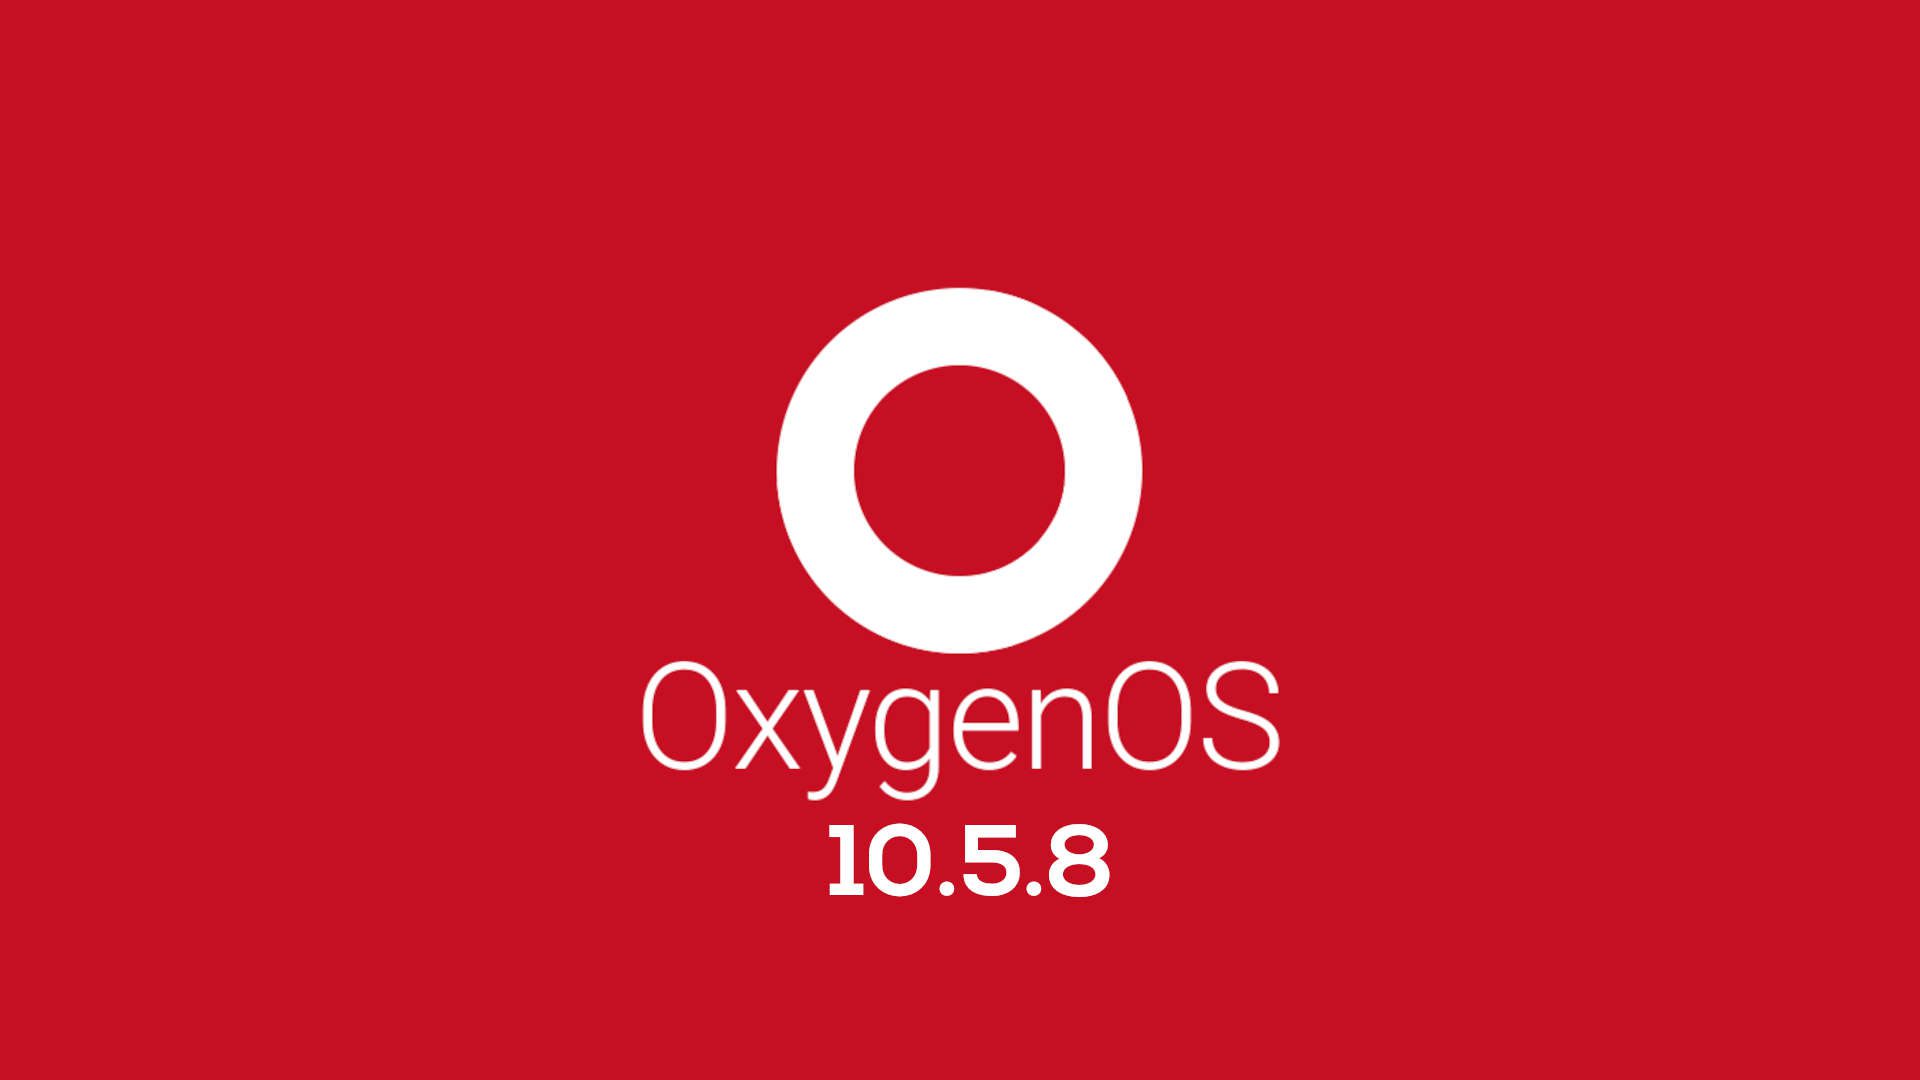 oneplus oxygenos 10.5.8